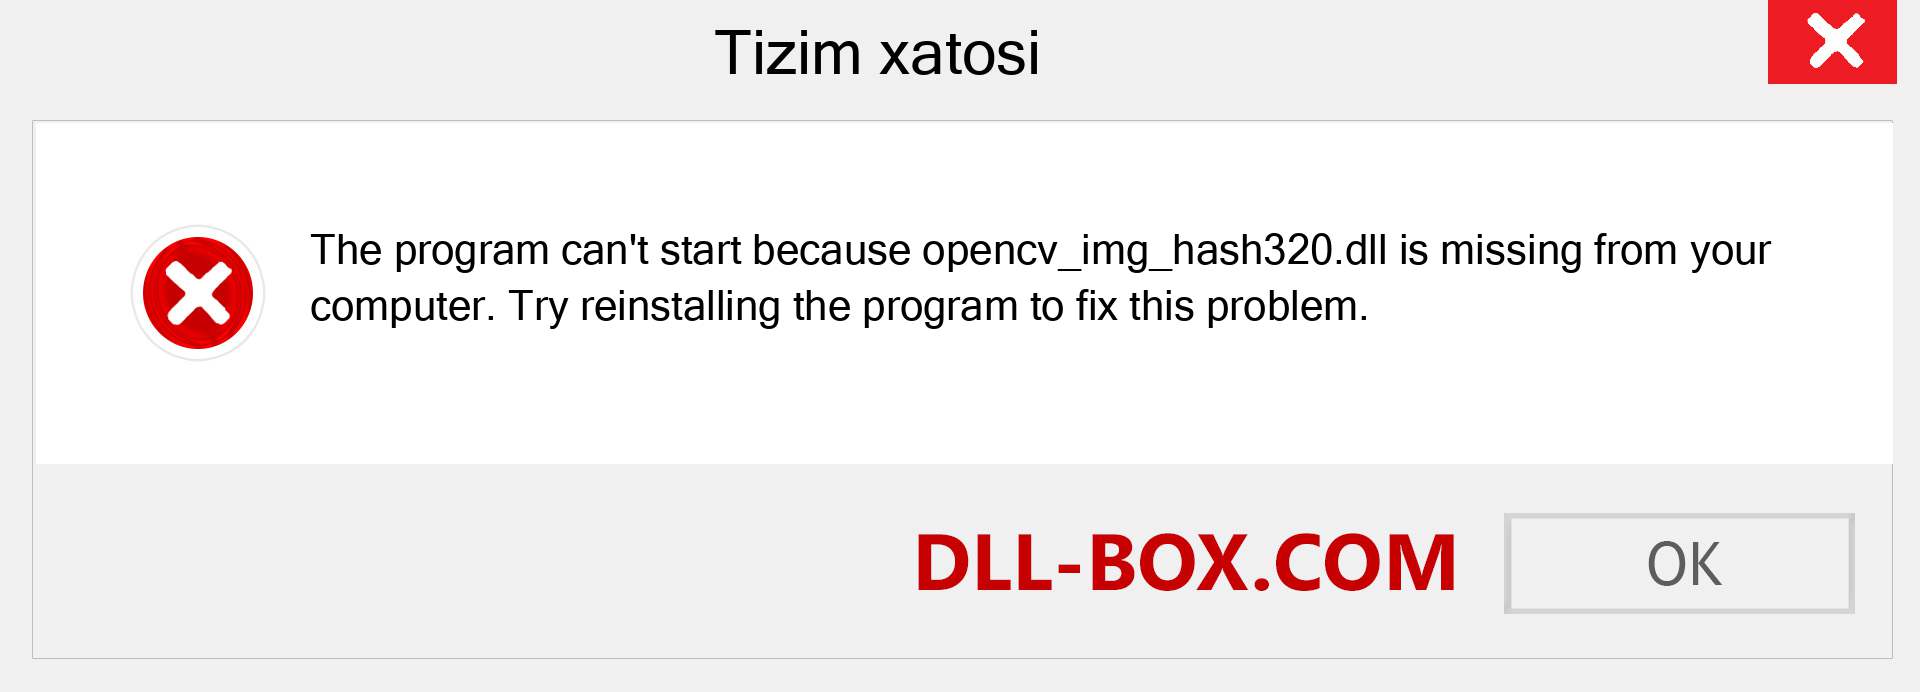 opencv_img_hash320.dll fayli yo'qolganmi?. Windows 7, 8, 10 uchun yuklab olish - Windowsda opencv_img_hash320 dll etishmayotgan xatoni tuzating, rasmlar, rasmlar